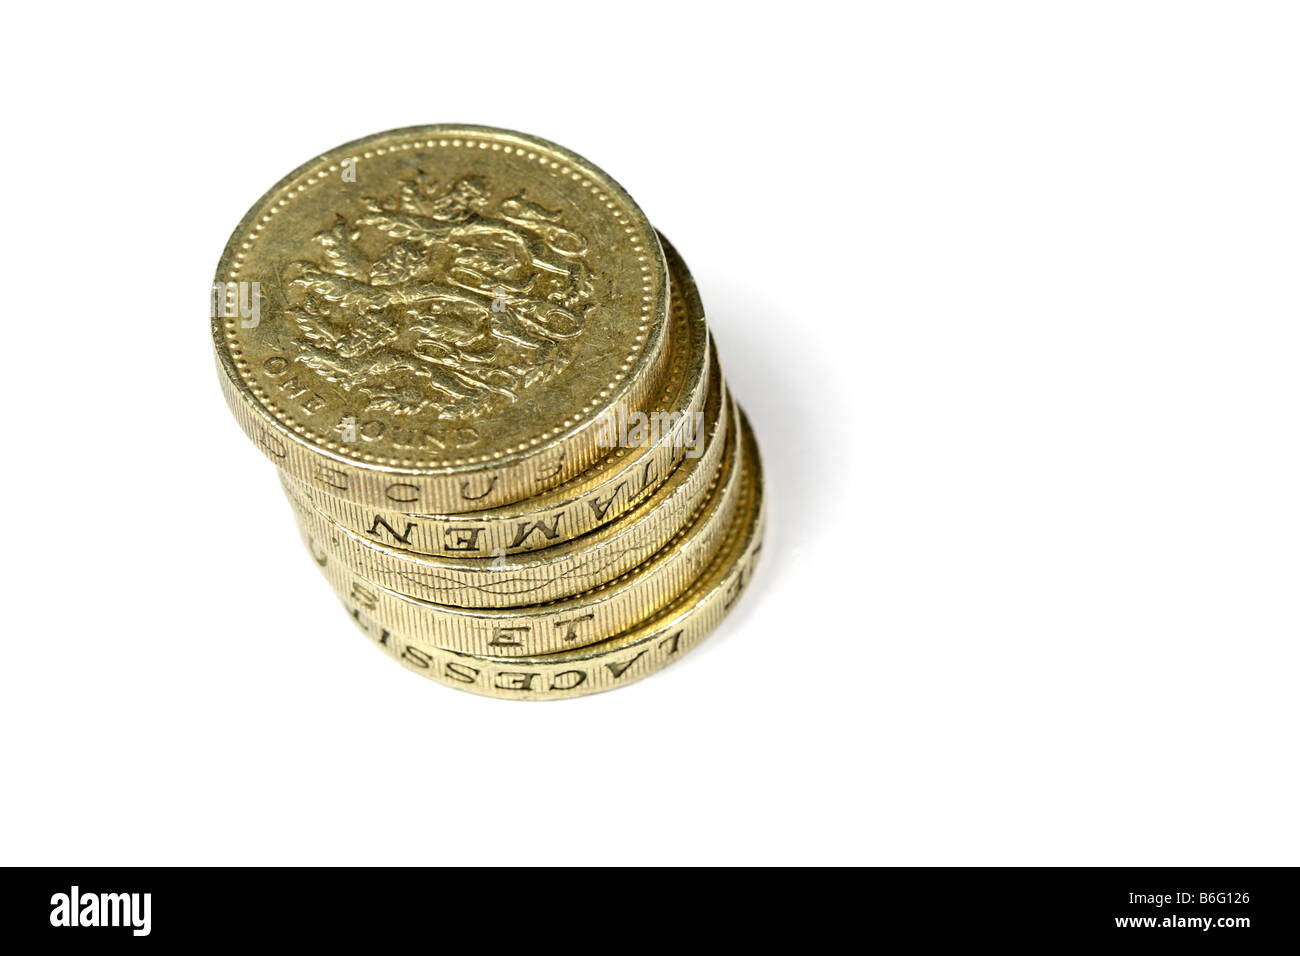 One Pound Coins on white background. Stock Photo